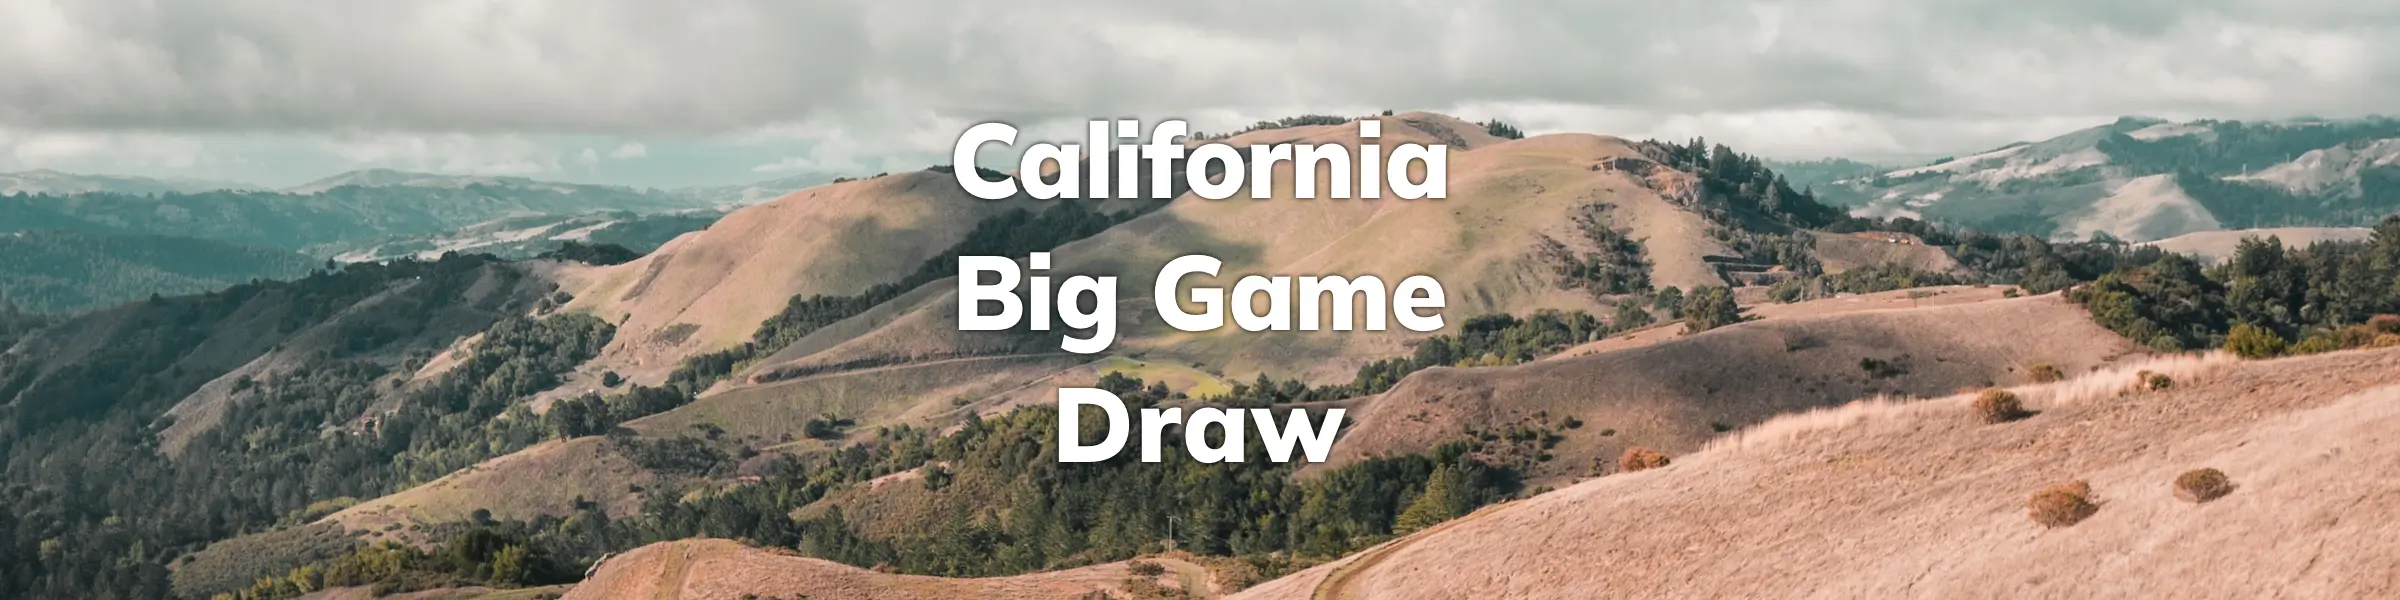 California Big Game Draw